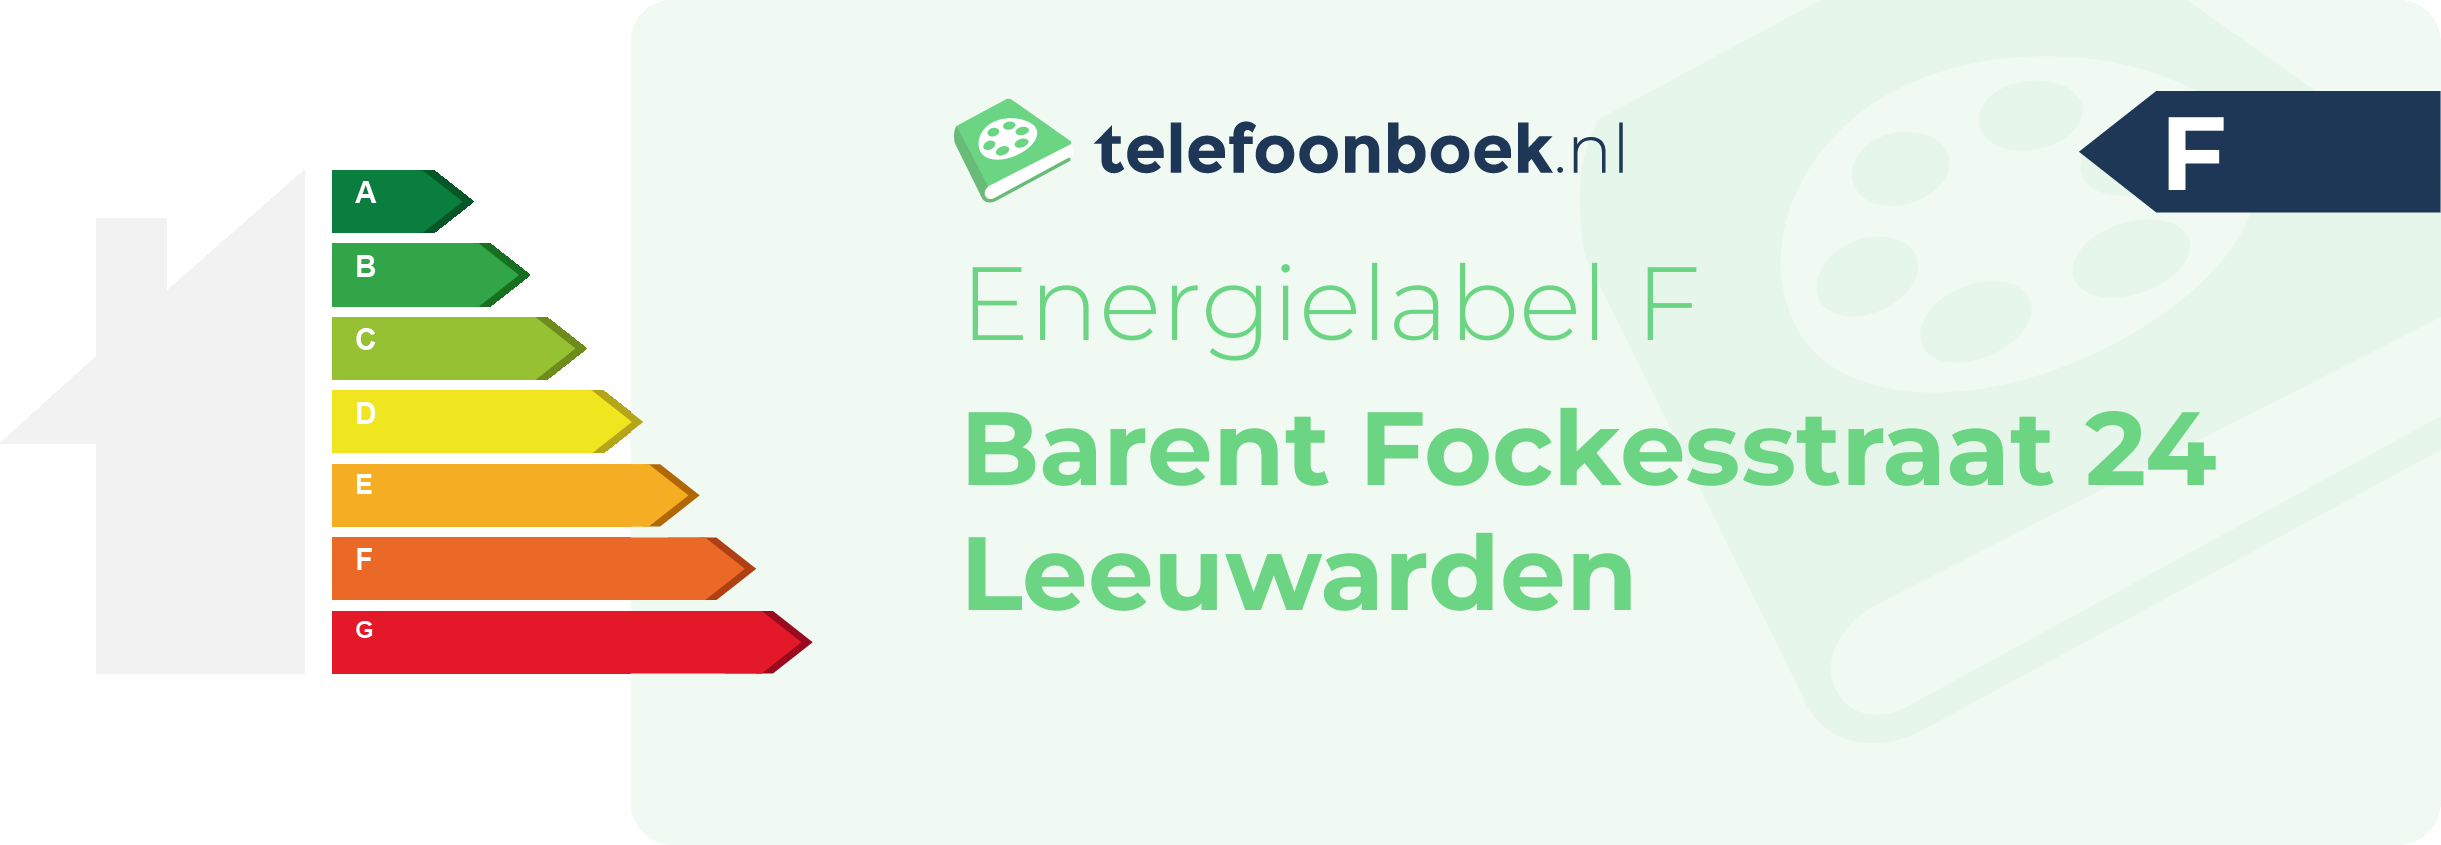 Energielabel Barent Fockesstraat 24 Leeuwarden